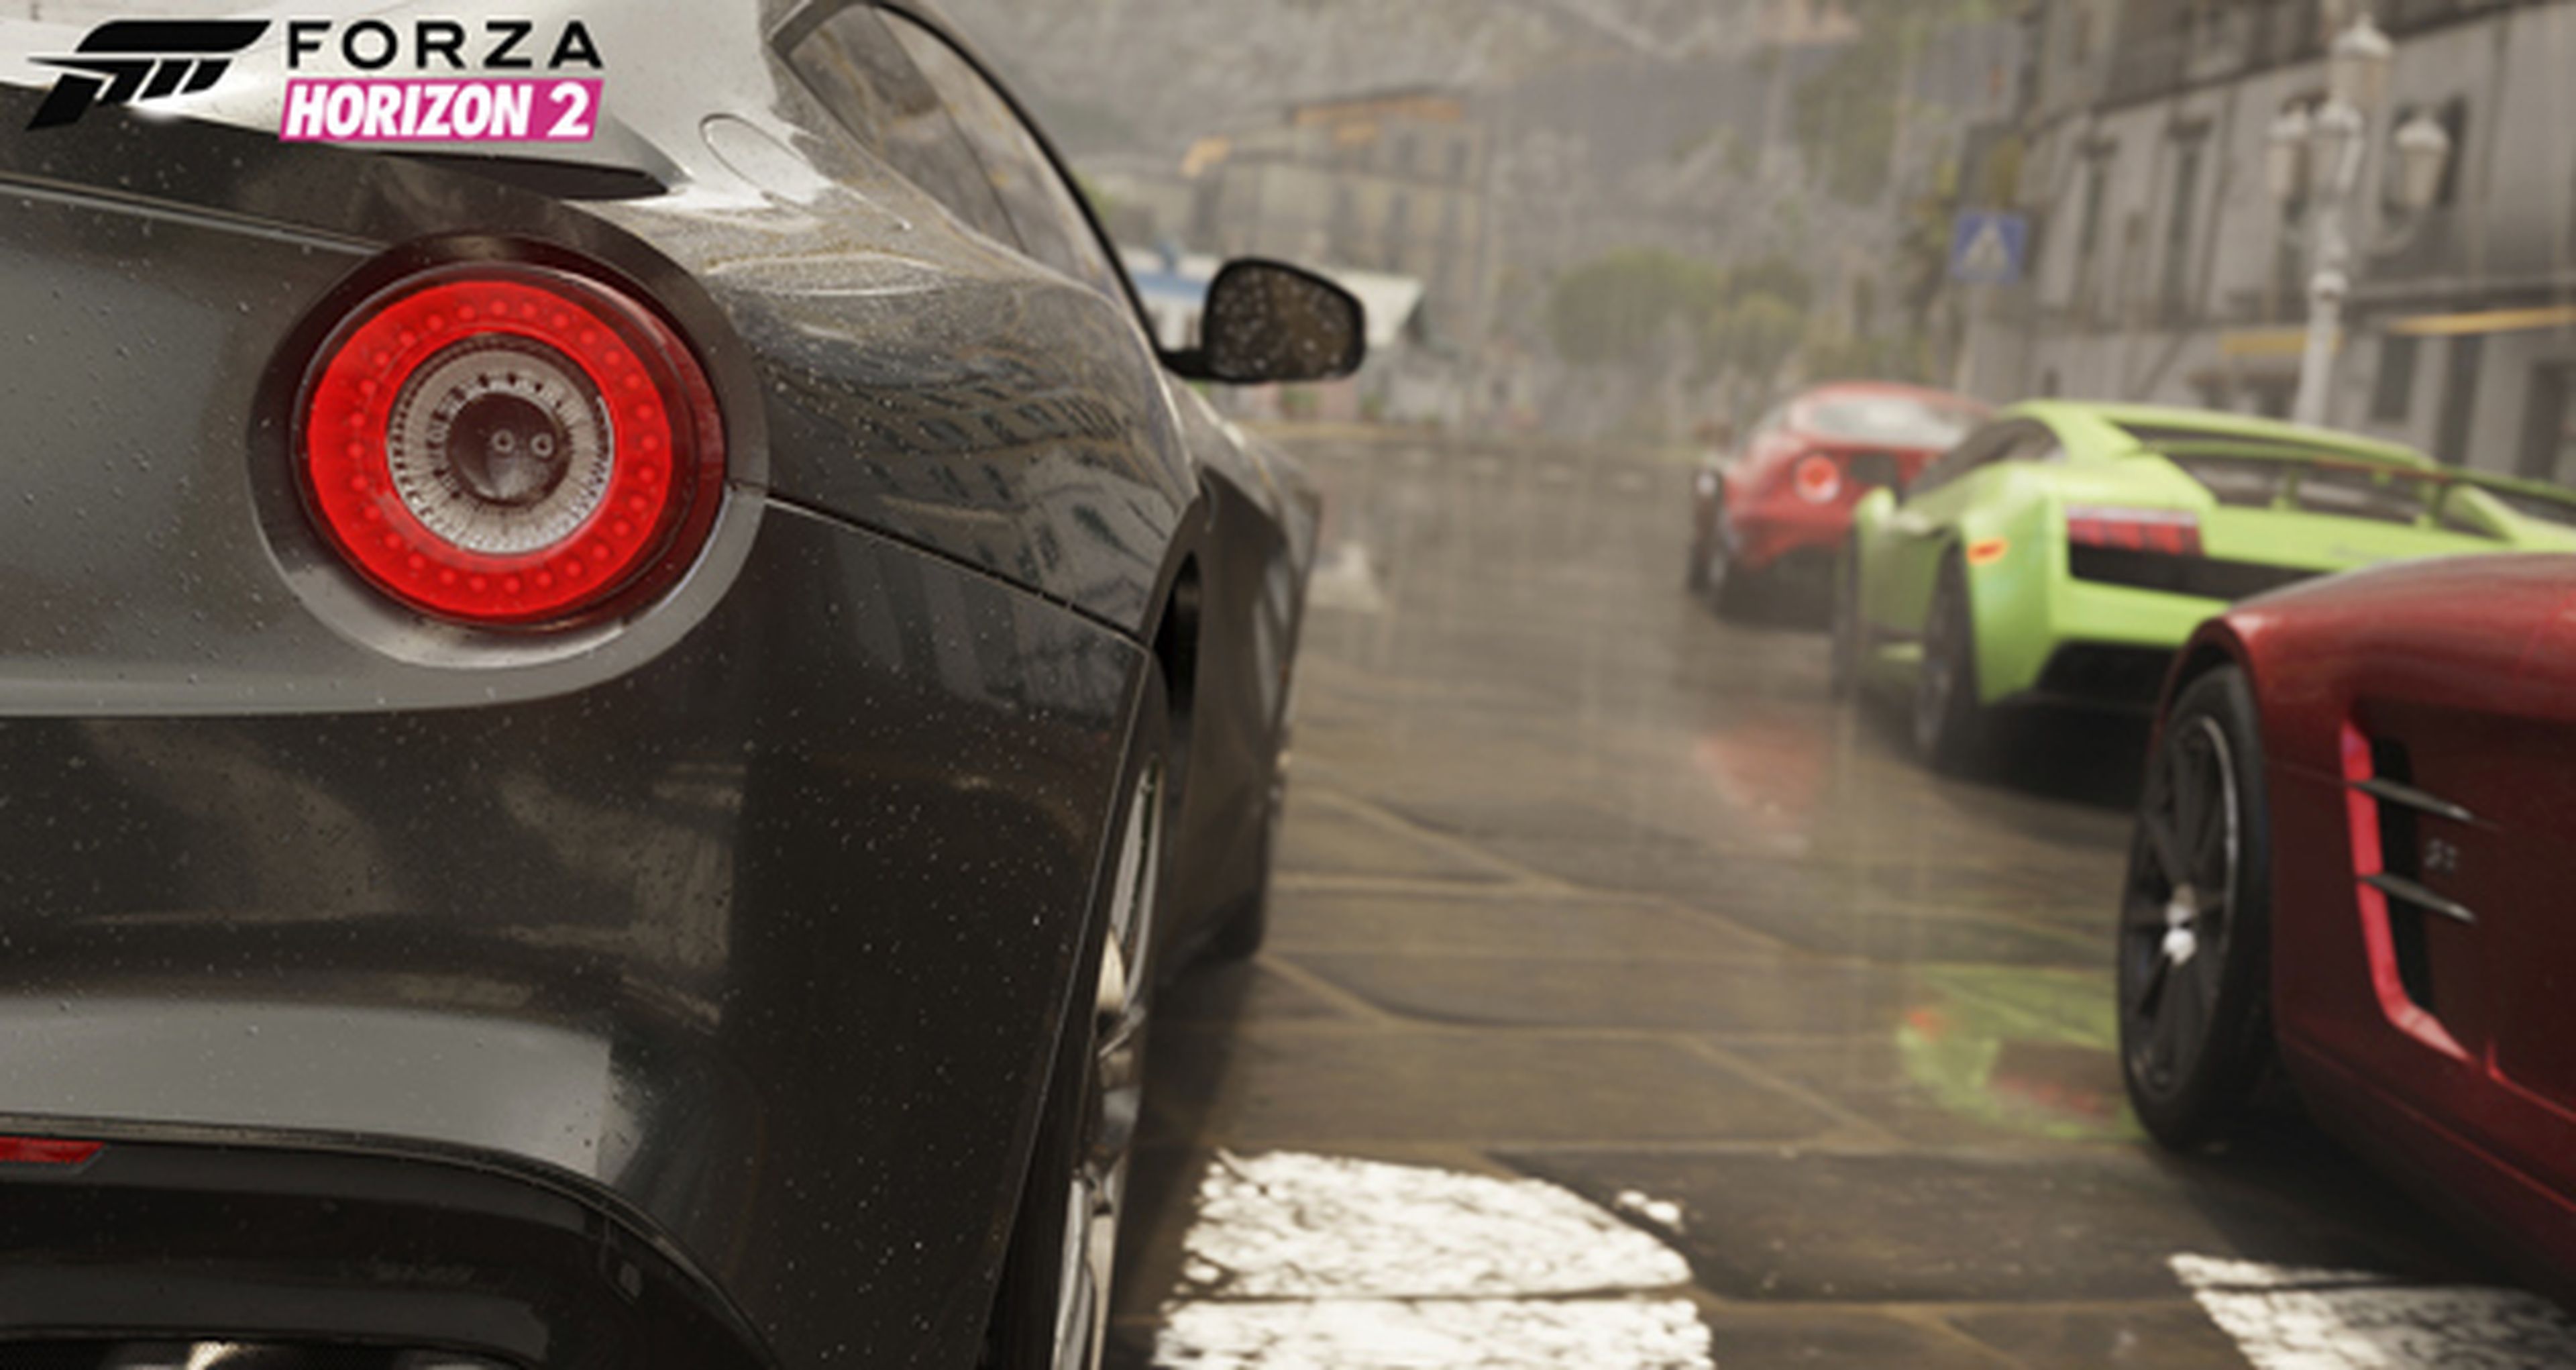 Imágenes de Forza Horizon 2 en Xbox One